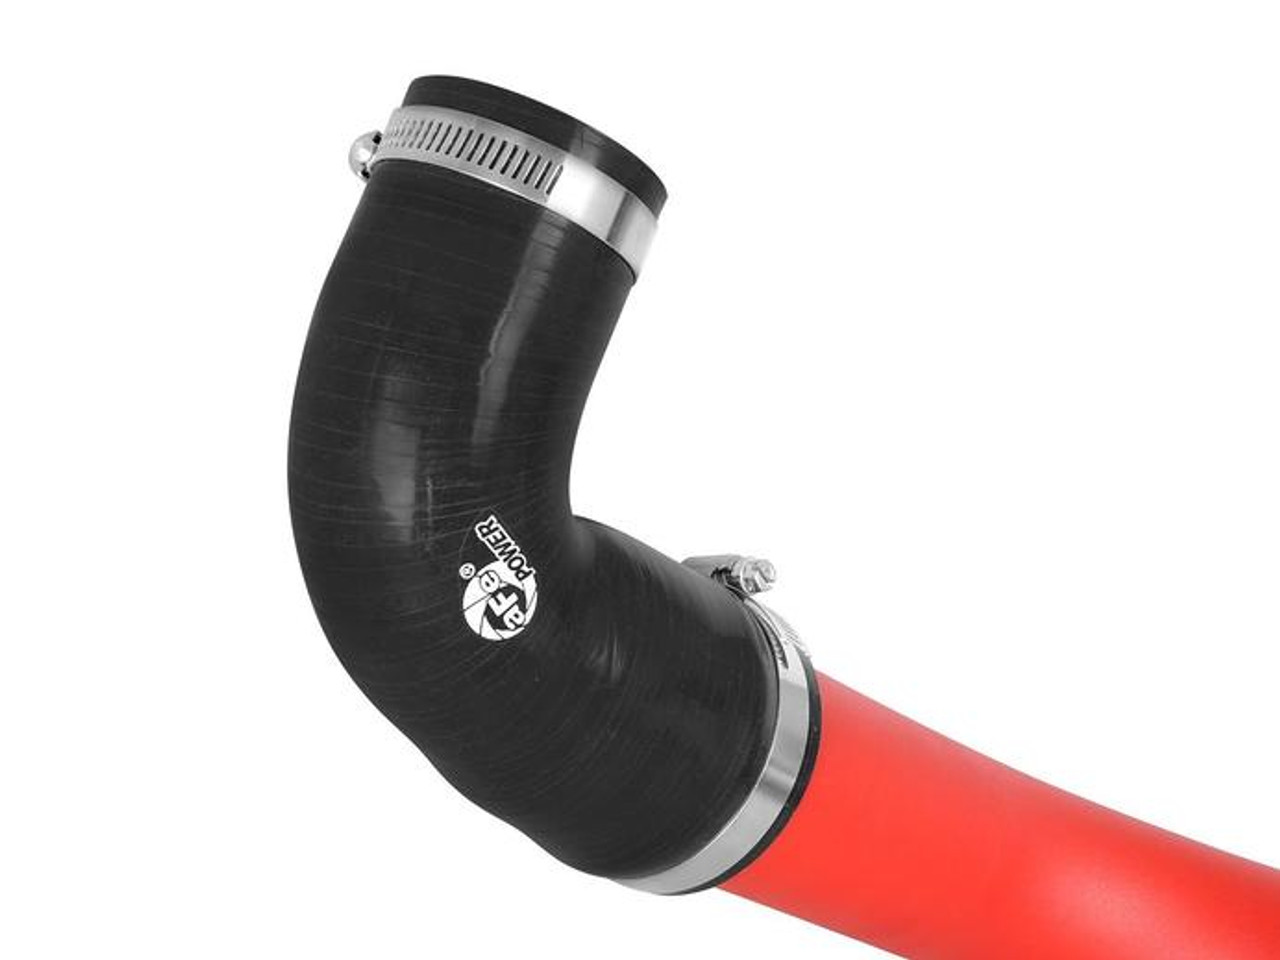 BladeRunner 2-1/2 IN Intercooler Tube Hot Side Red